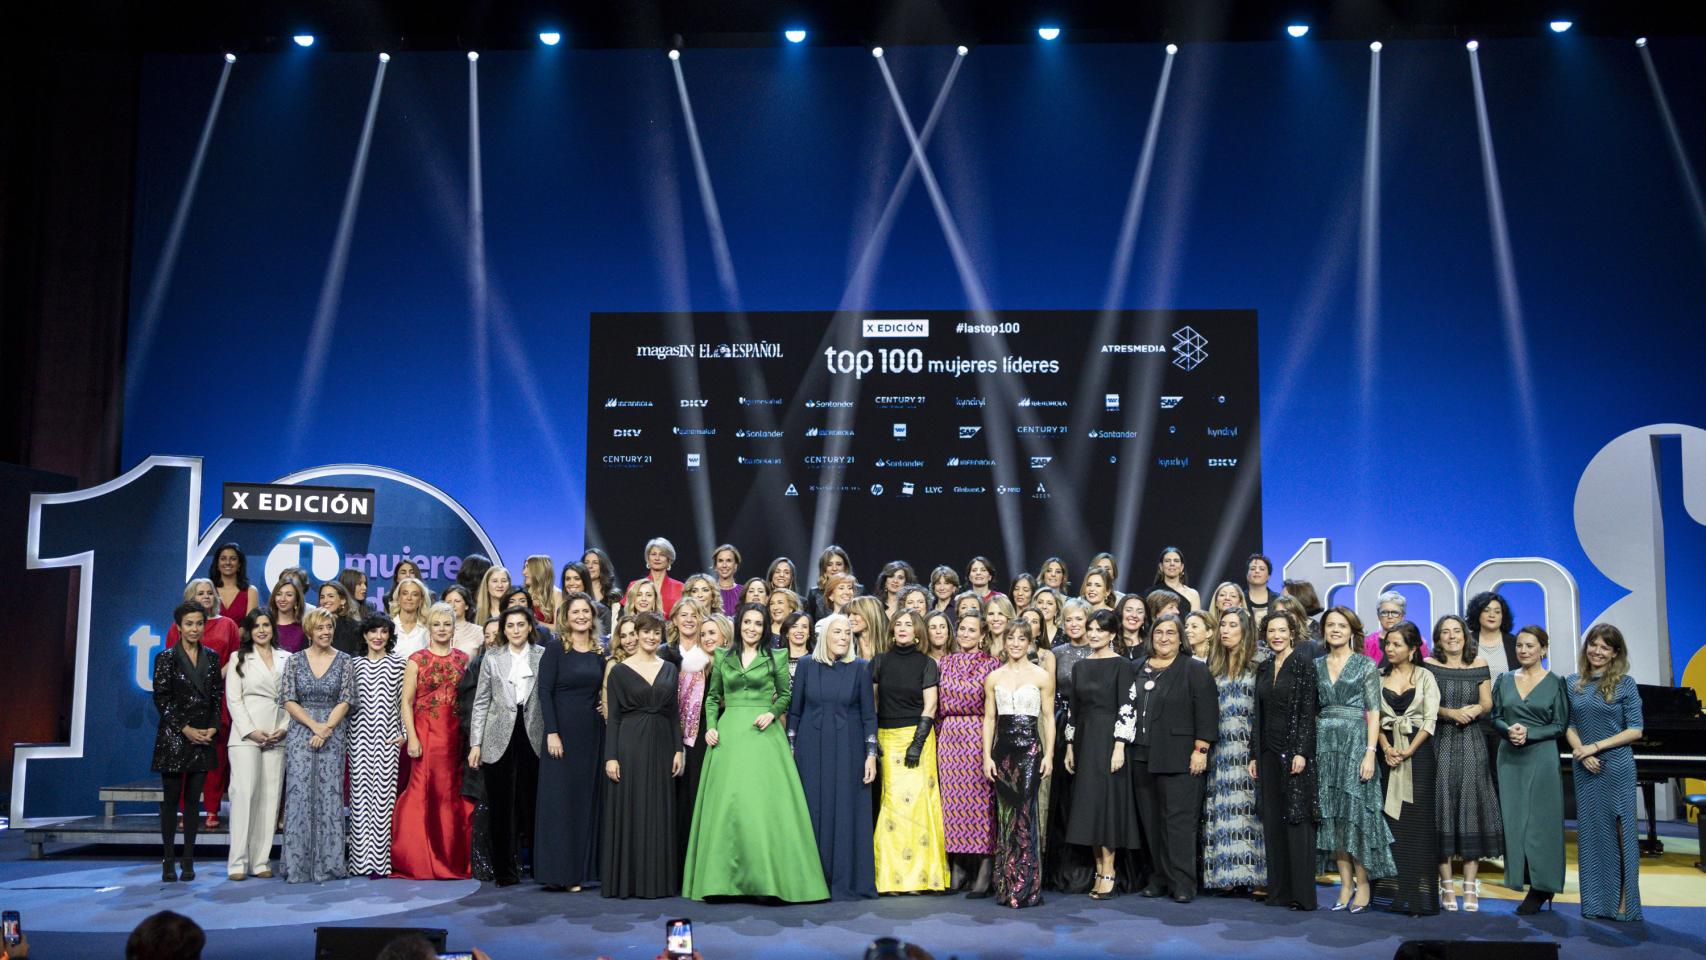 'Las Top 100 Mujeres Líderes' en el escenario del Teatro Real en el marco de la X Edición